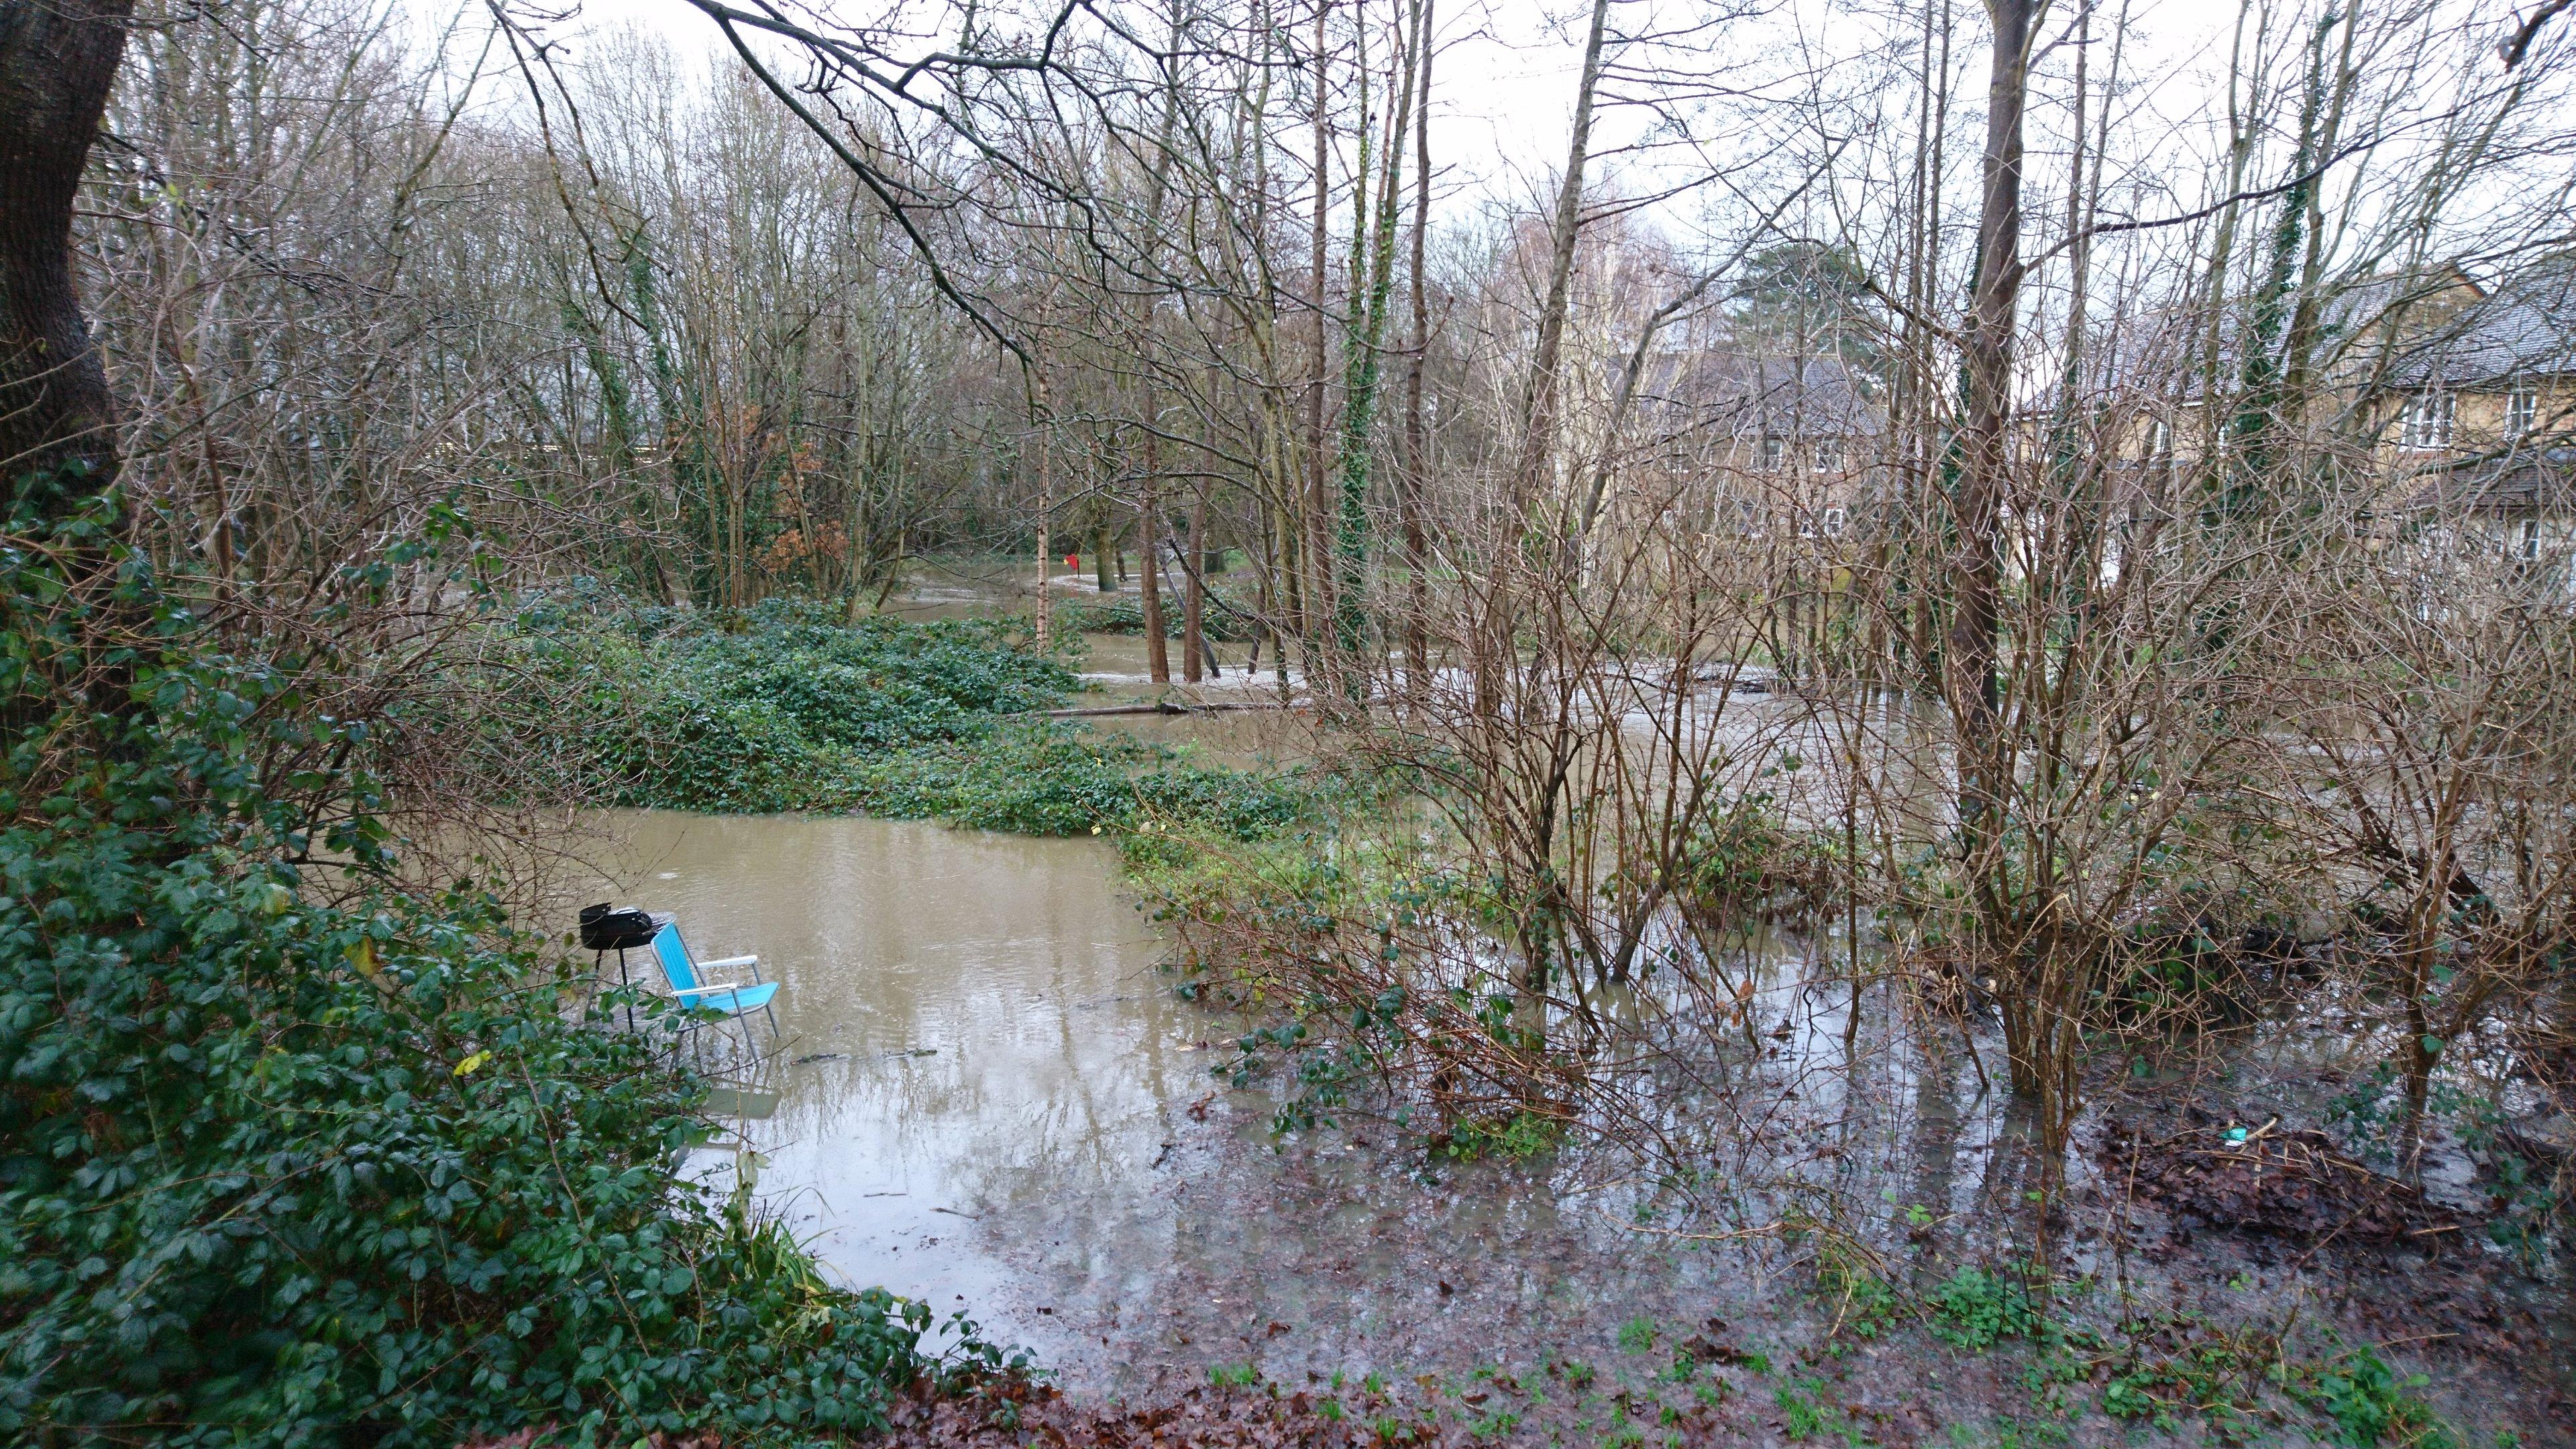 Flooding in Horsham. Photo by Bartlomiej Jedrzejczak